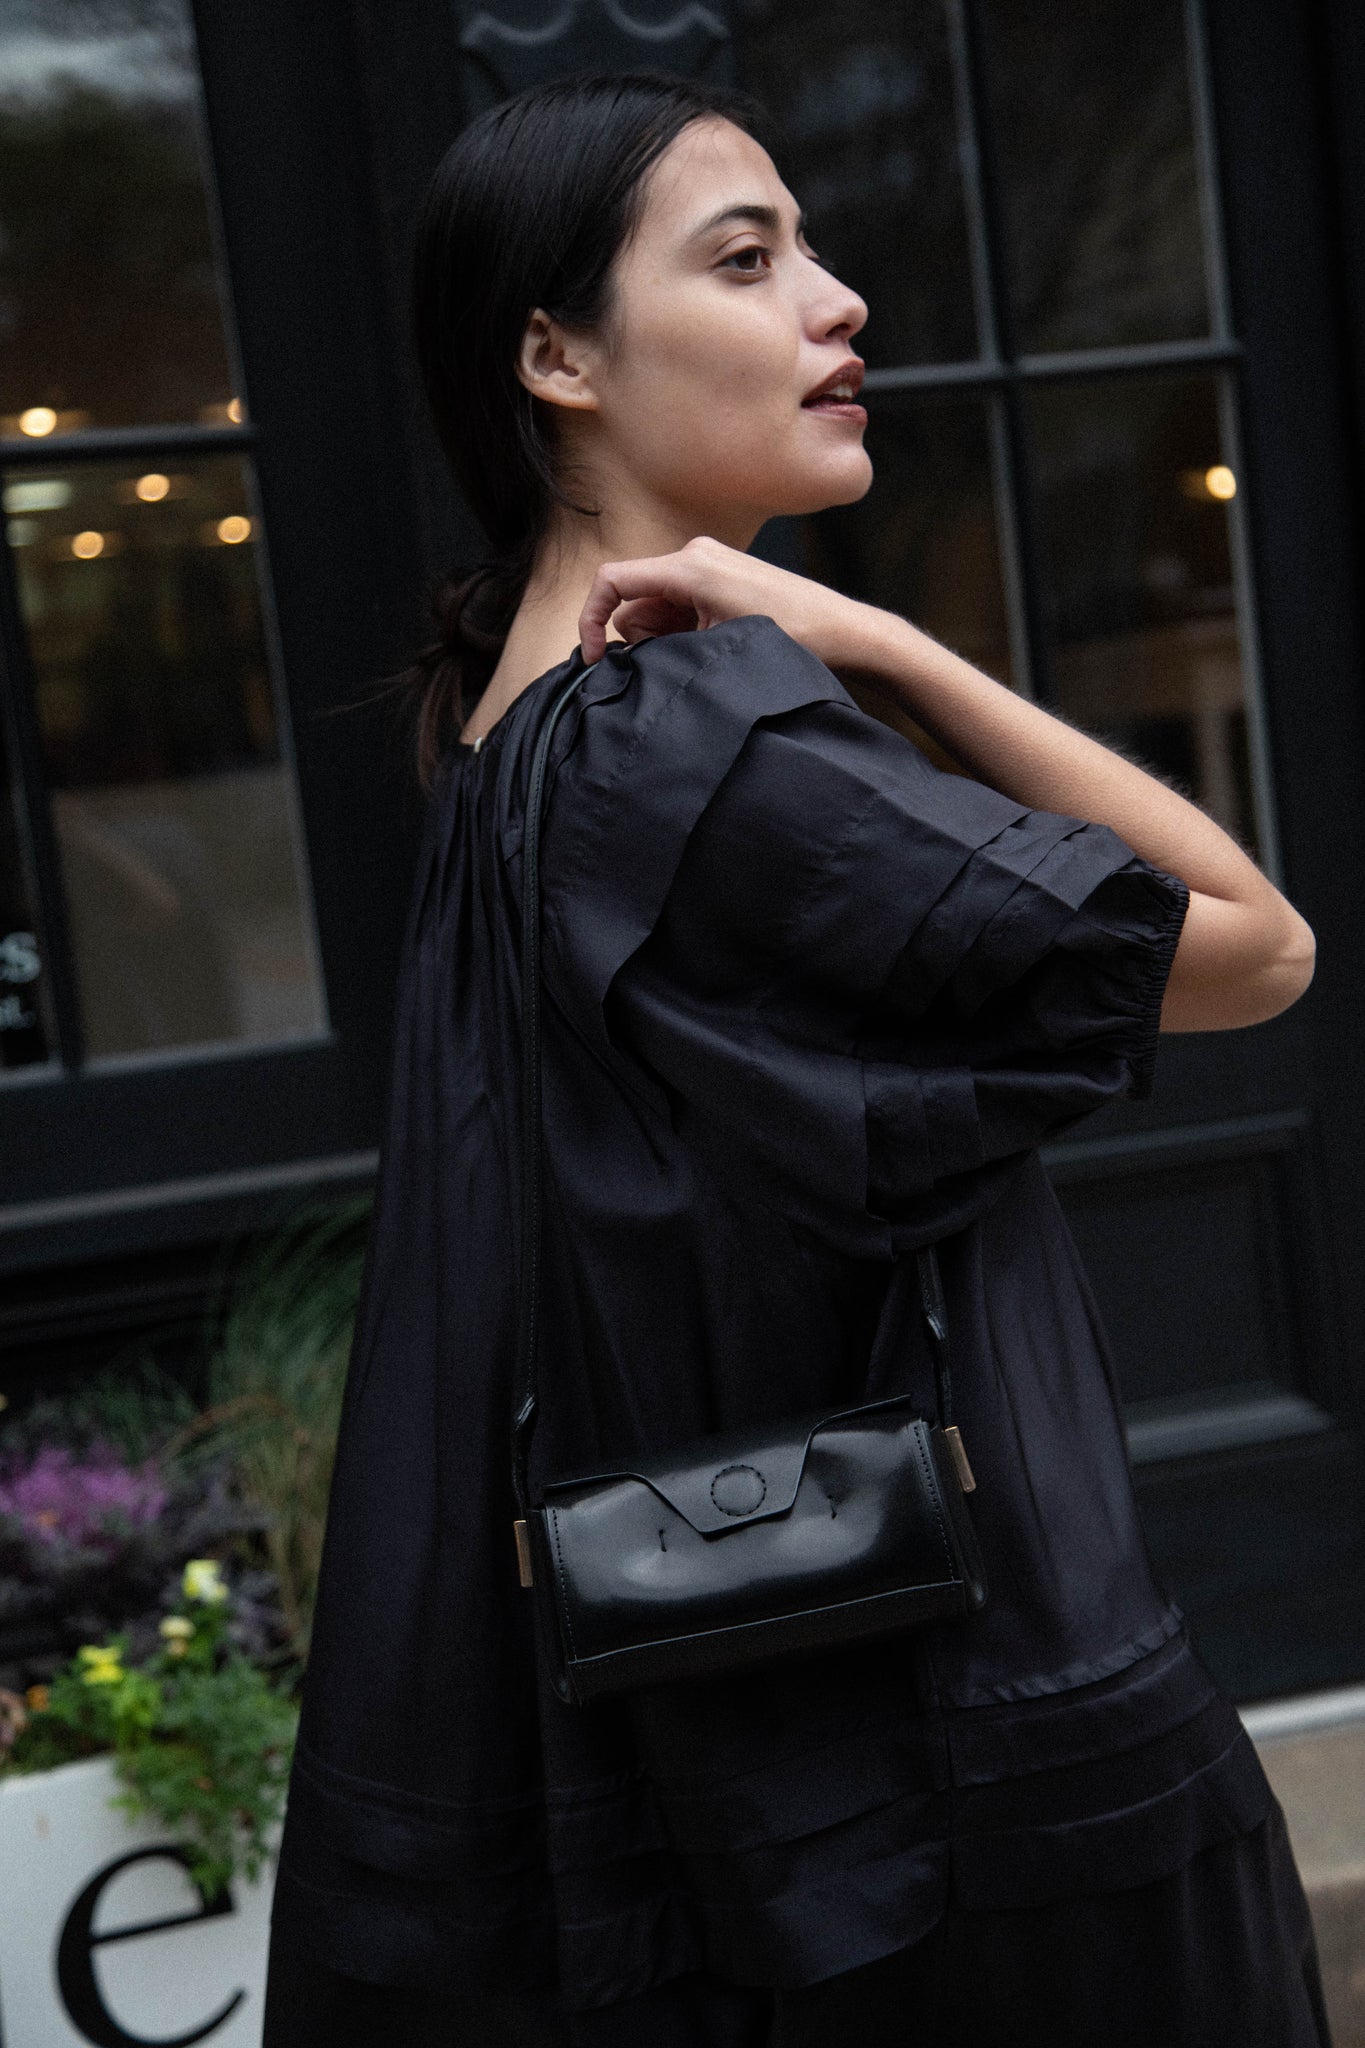 Melete | Mini Stella Bag in Black